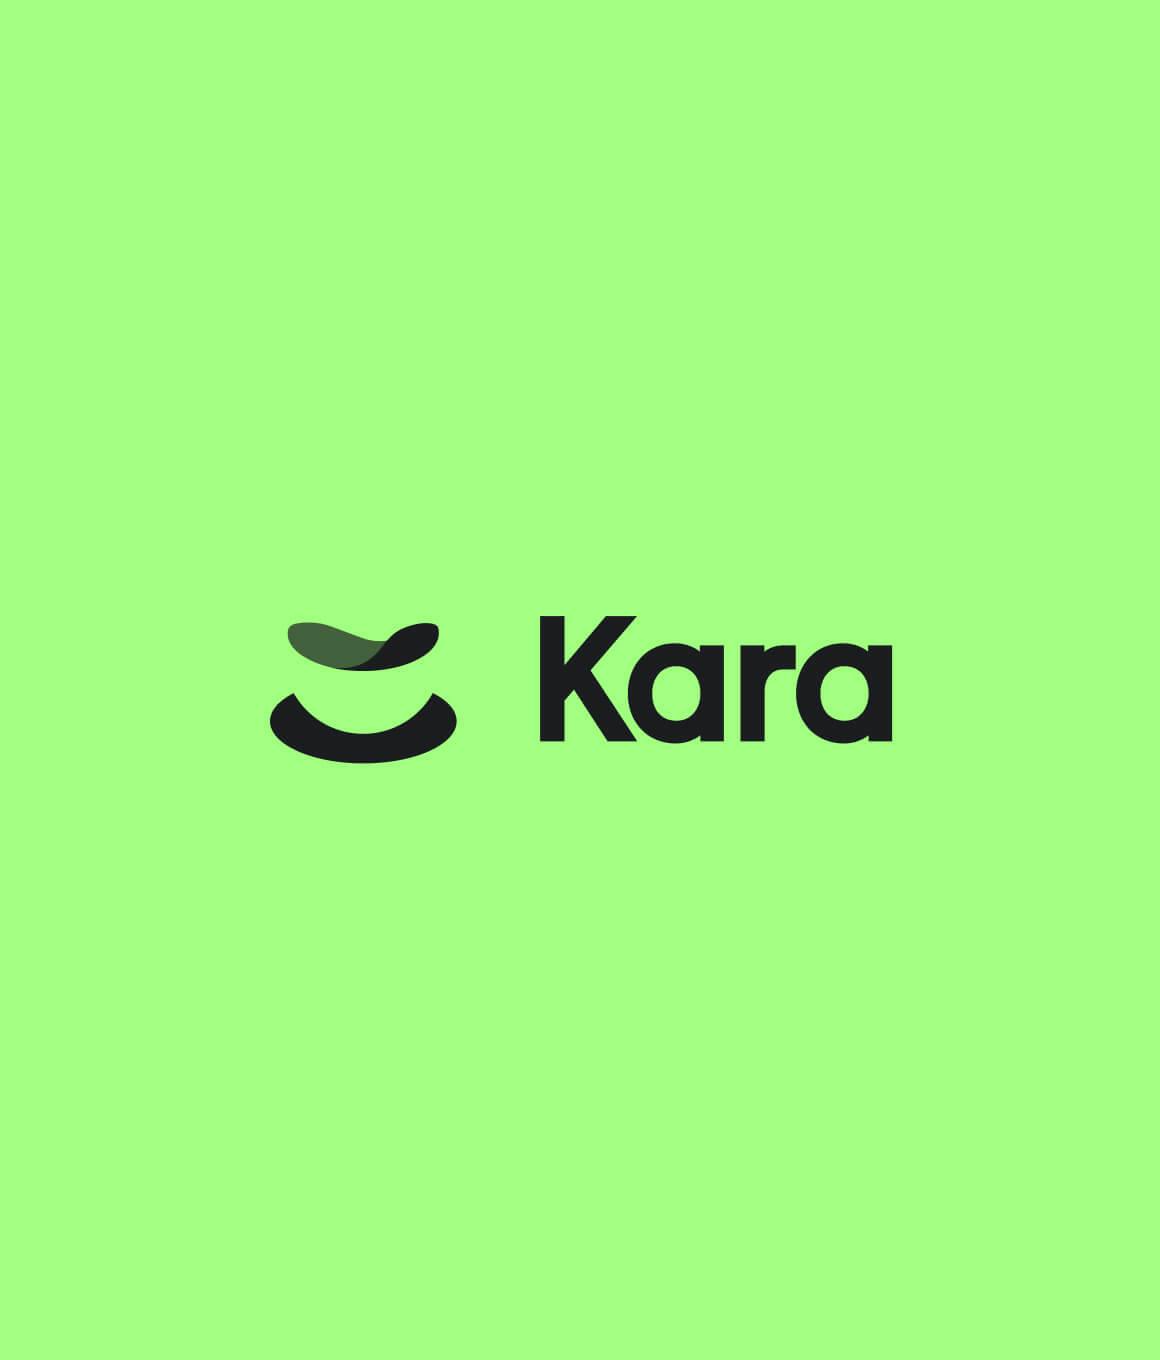 Kara - Logo Green 